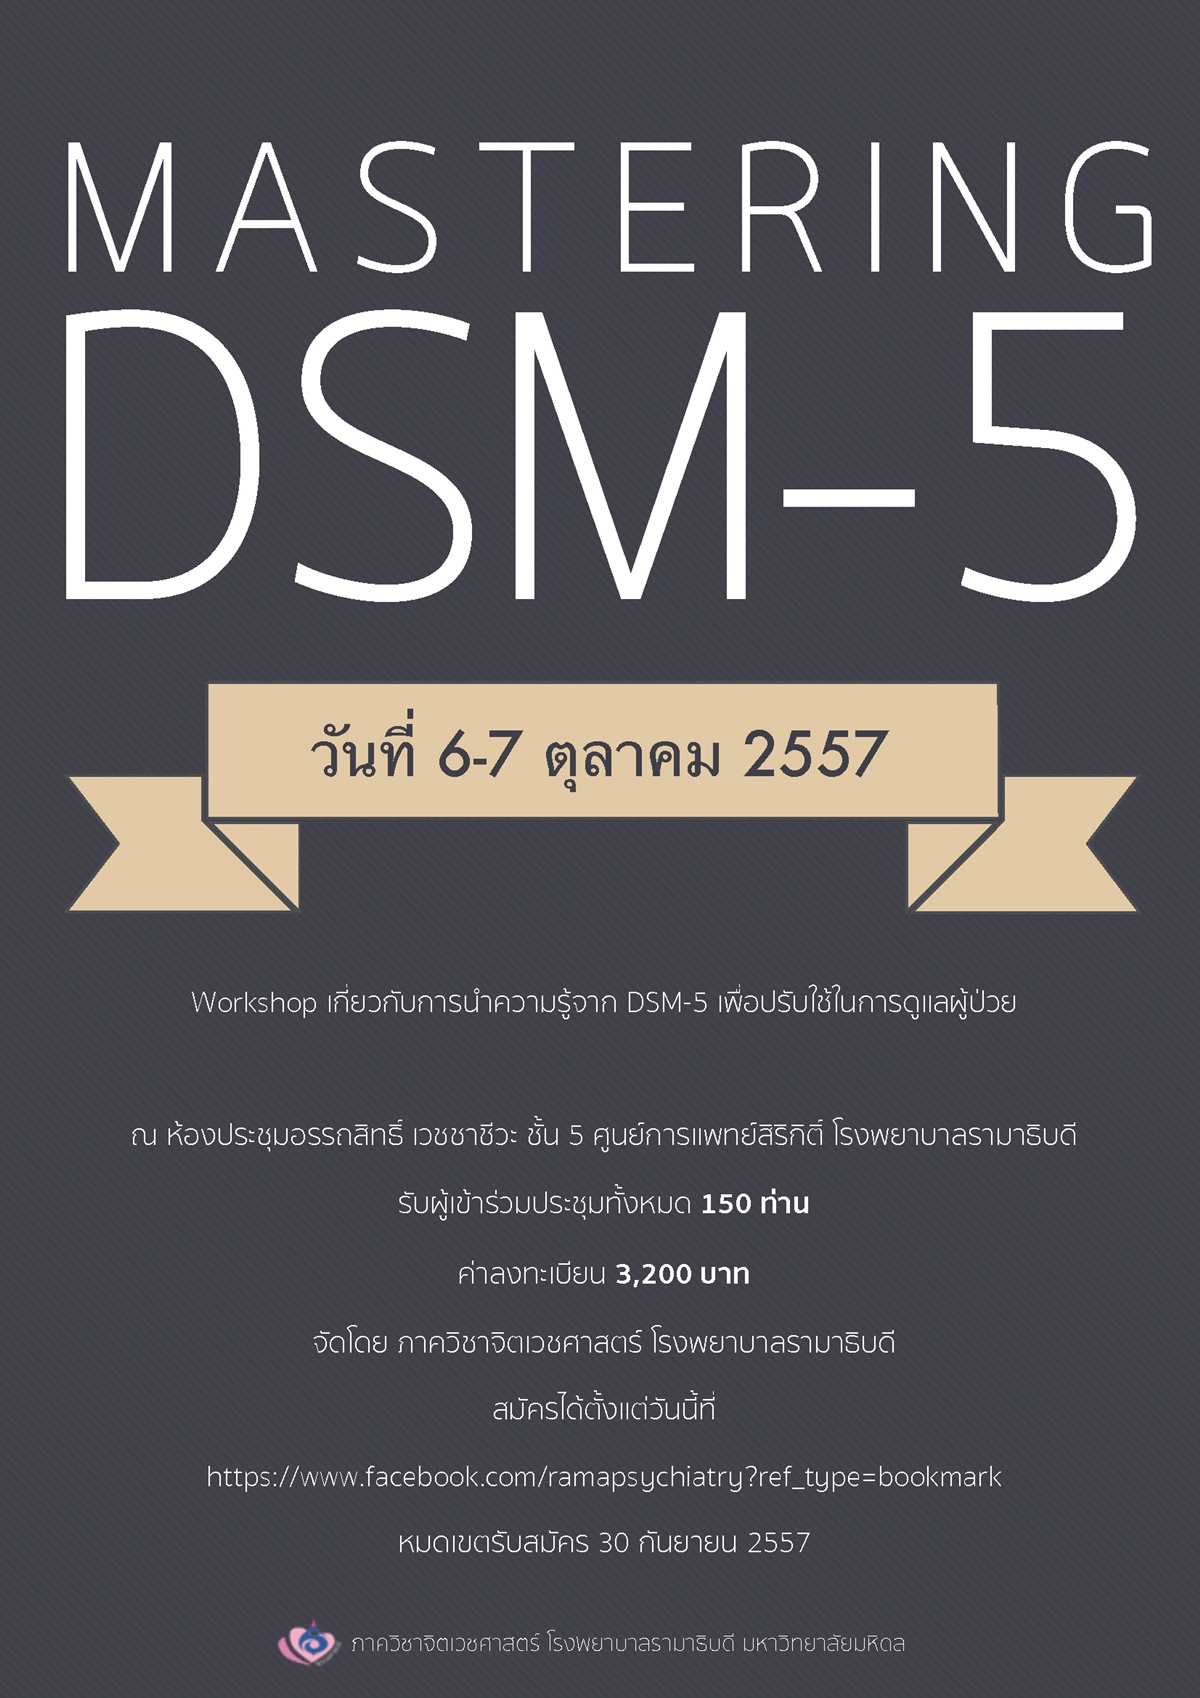 ประชุมวิชาการ เรื่อง “Mastering DSM-5” 